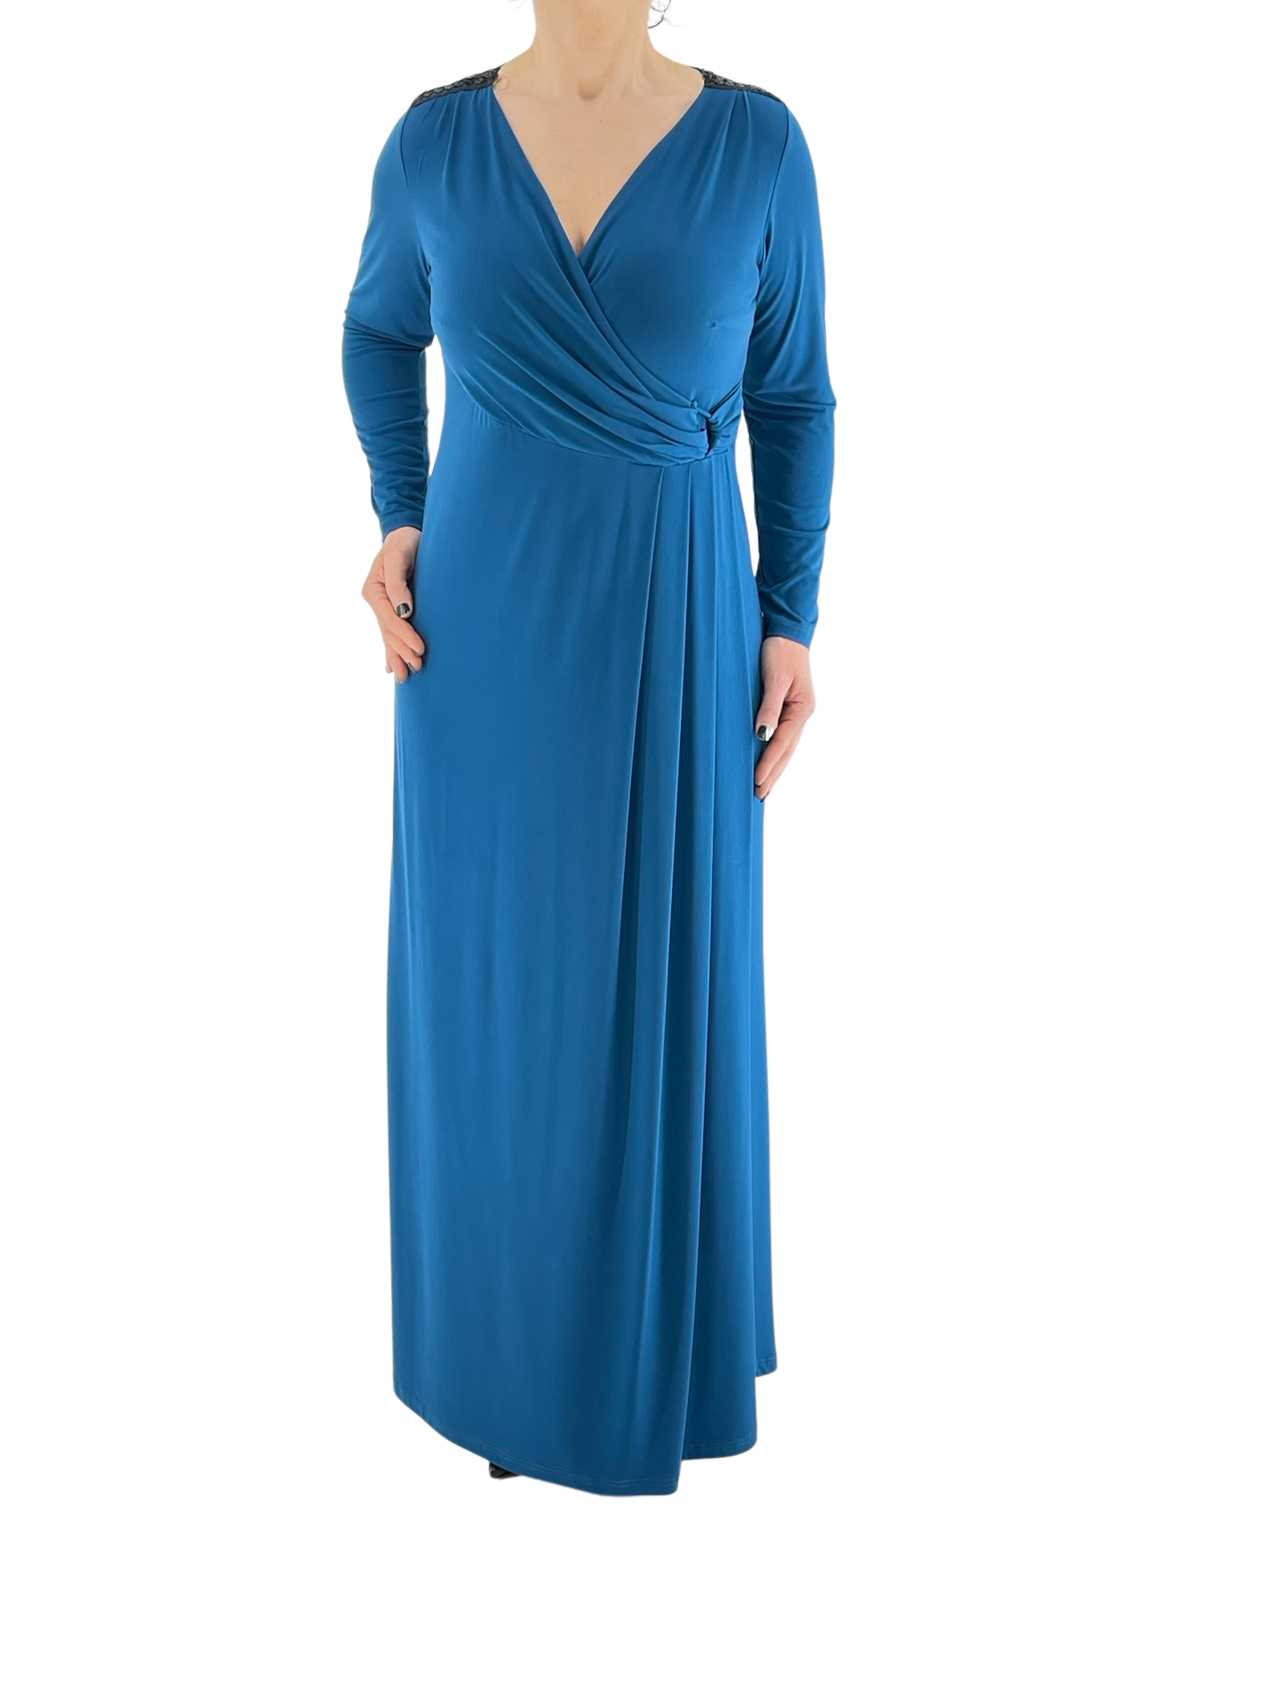 Φόρεμα κρουαζέ-φάκελος κωδ. 8508